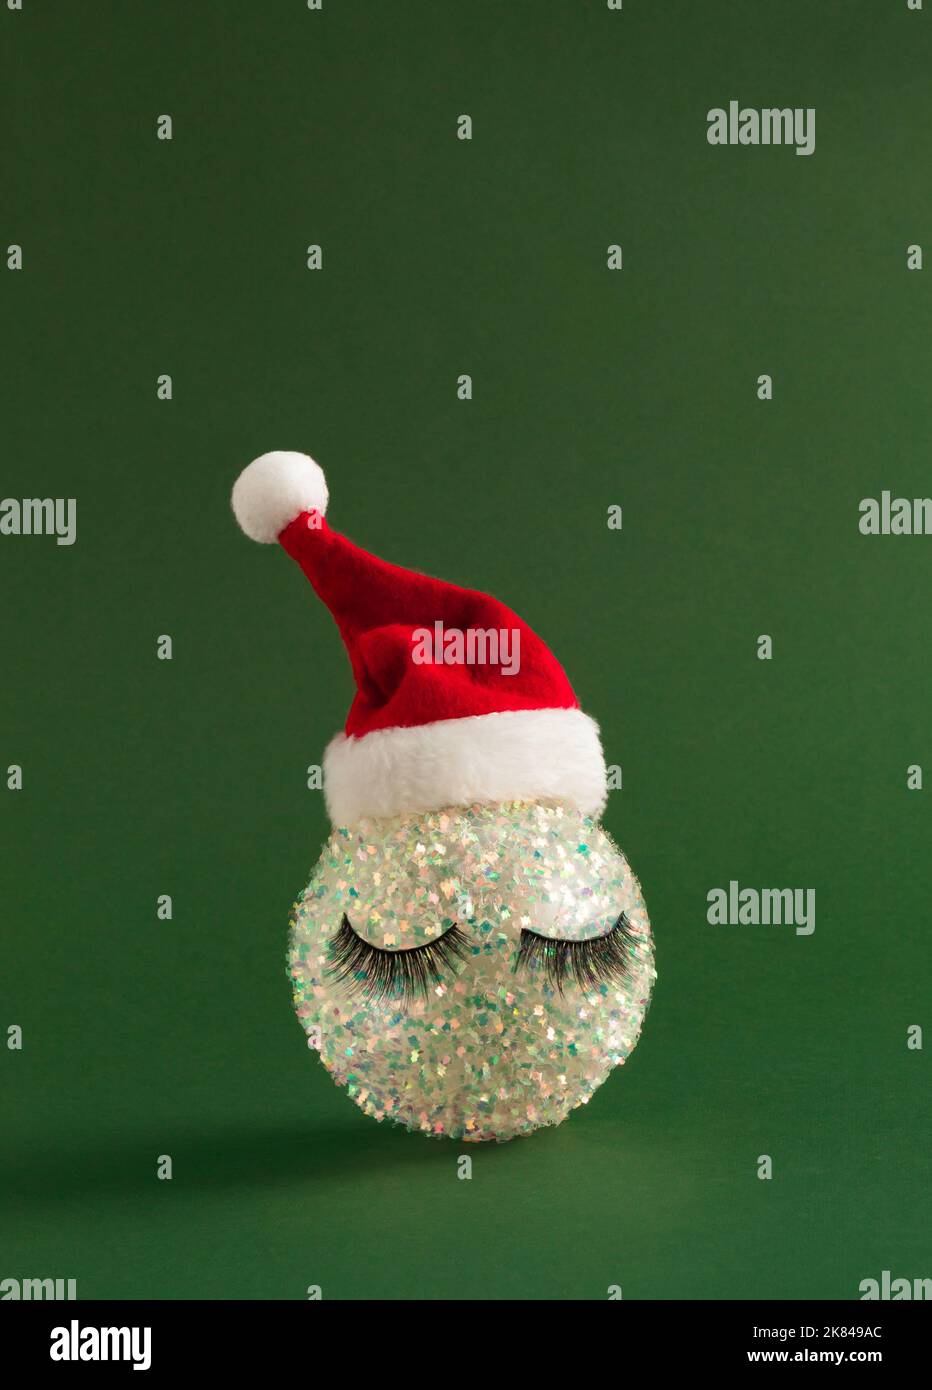 Boule de Noël blanche brillante avec cils et chapeau de Père Noël sur fond vert vif. Bonne année de fond. Banque D'Images